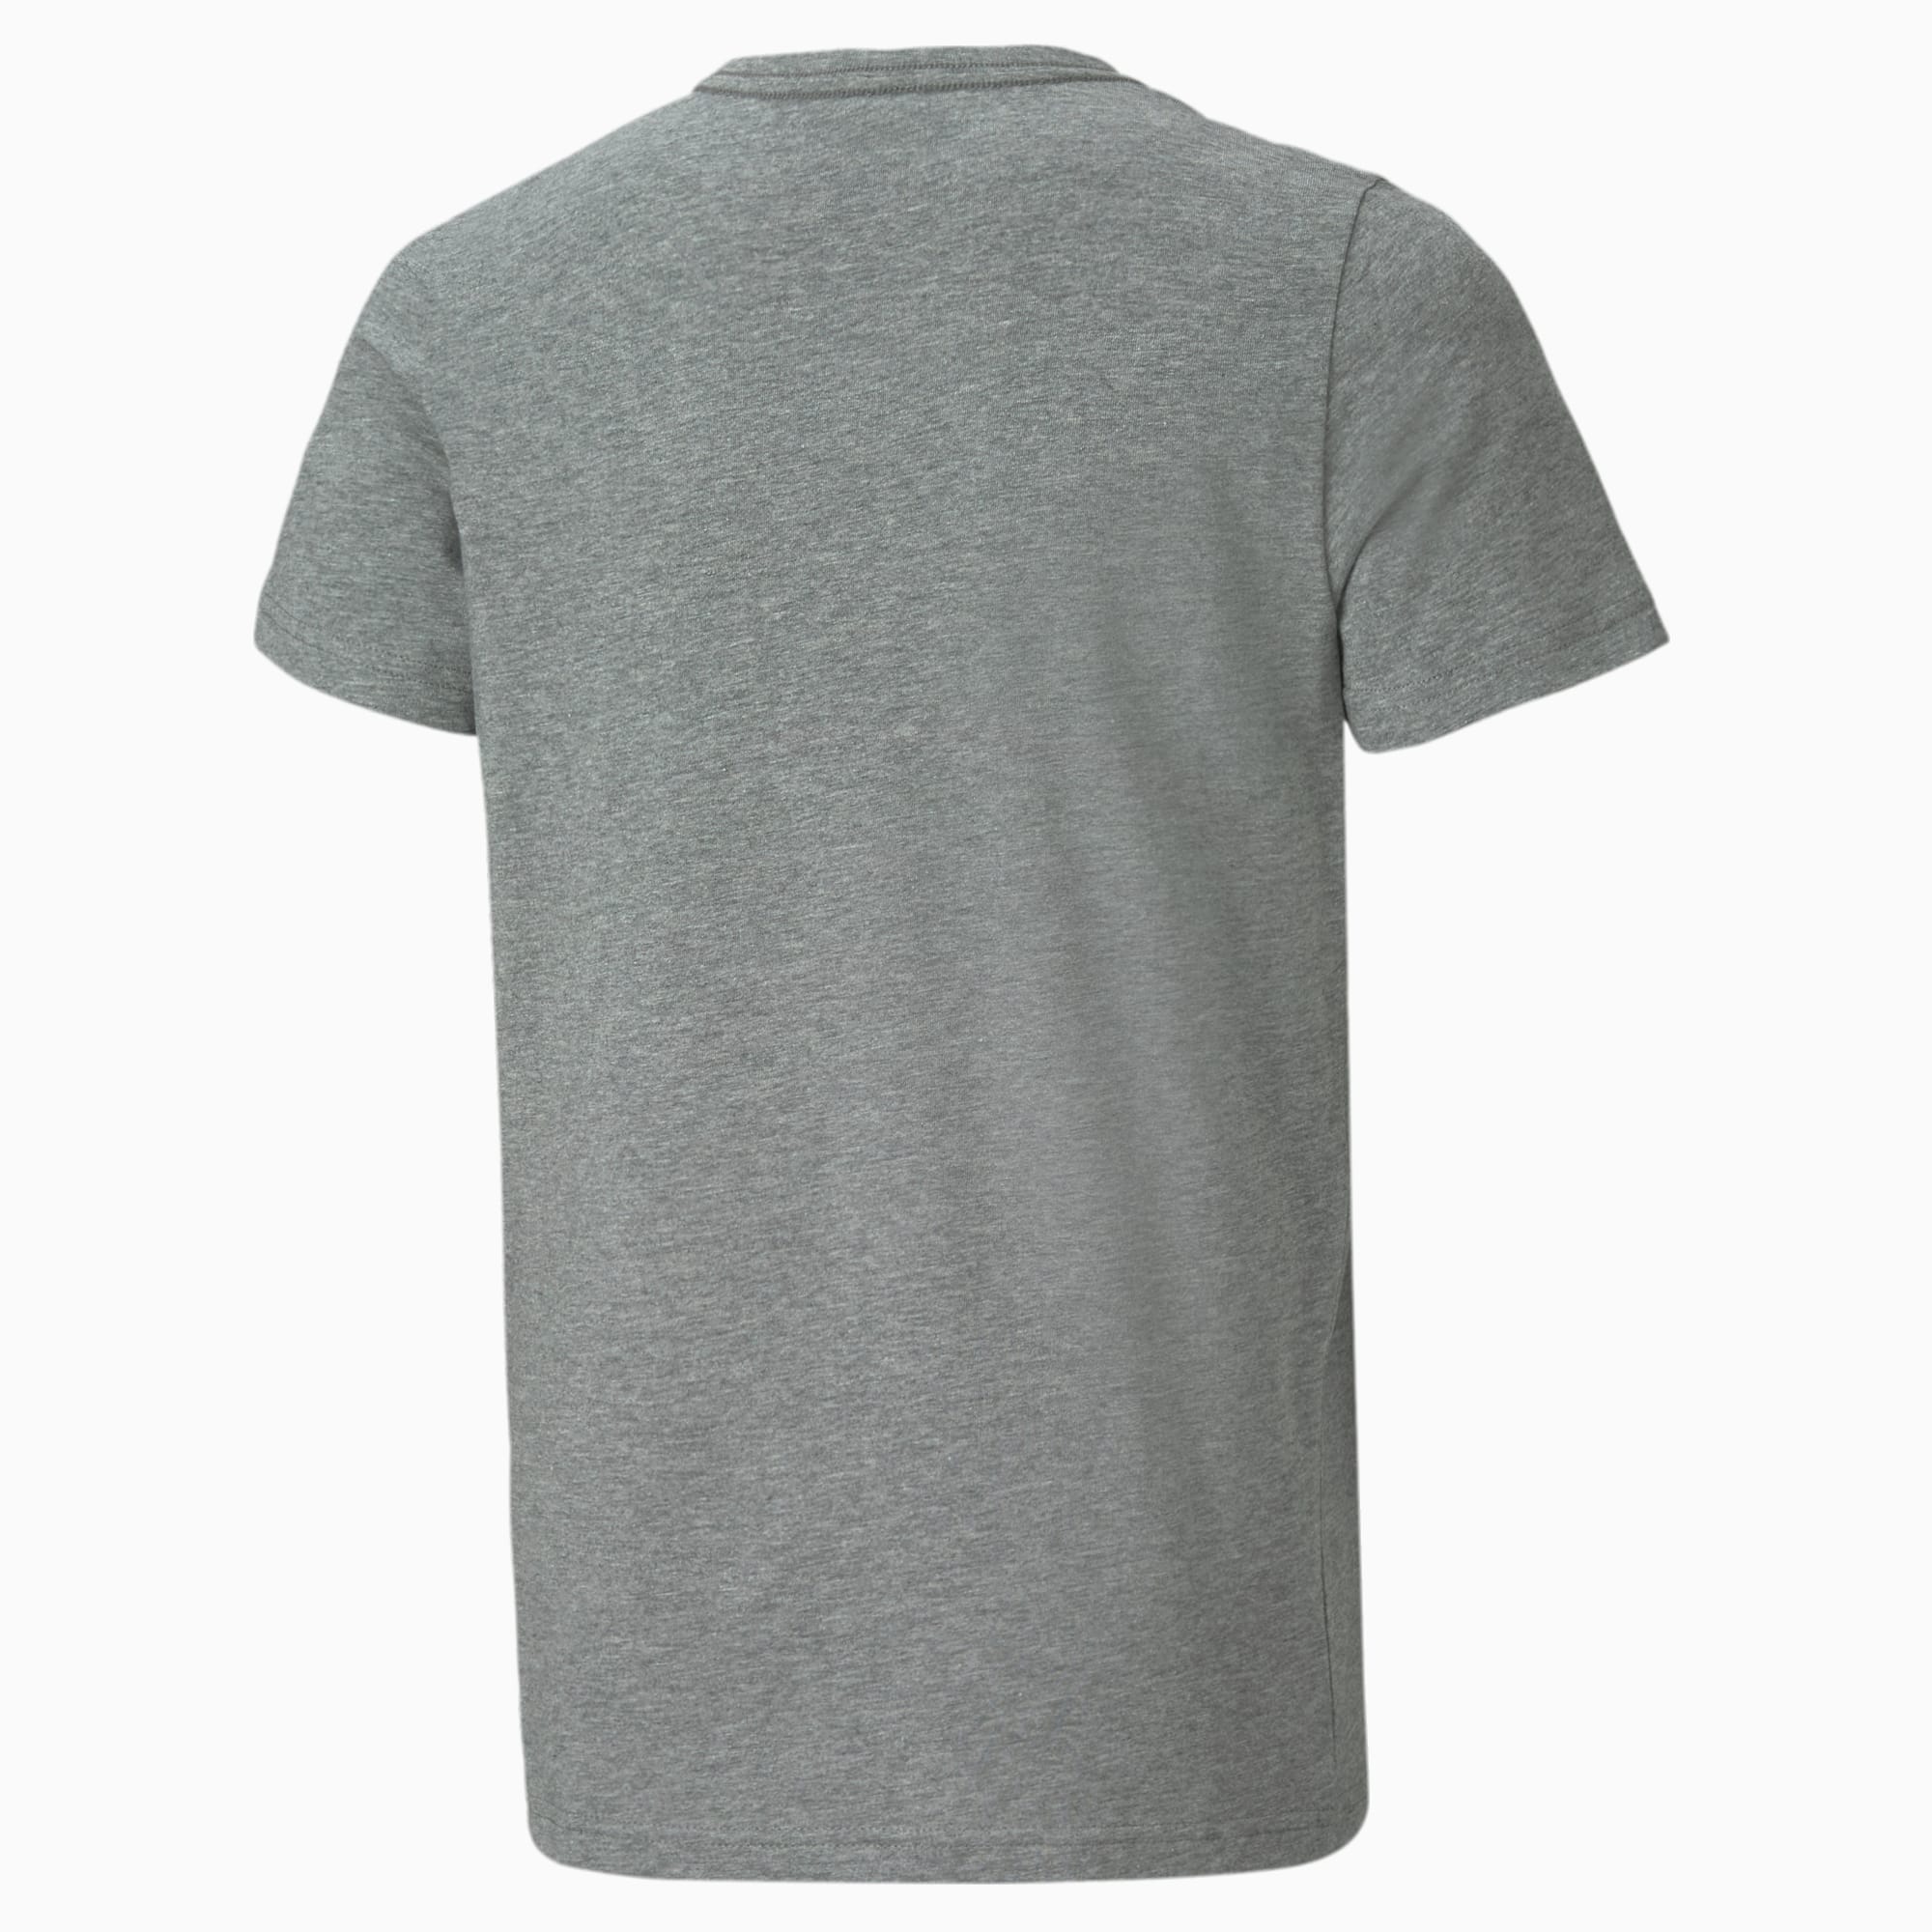 PUMA Essentials Logo Youth T-Shirt, Medium Grey Heather, Size 92, Clothing